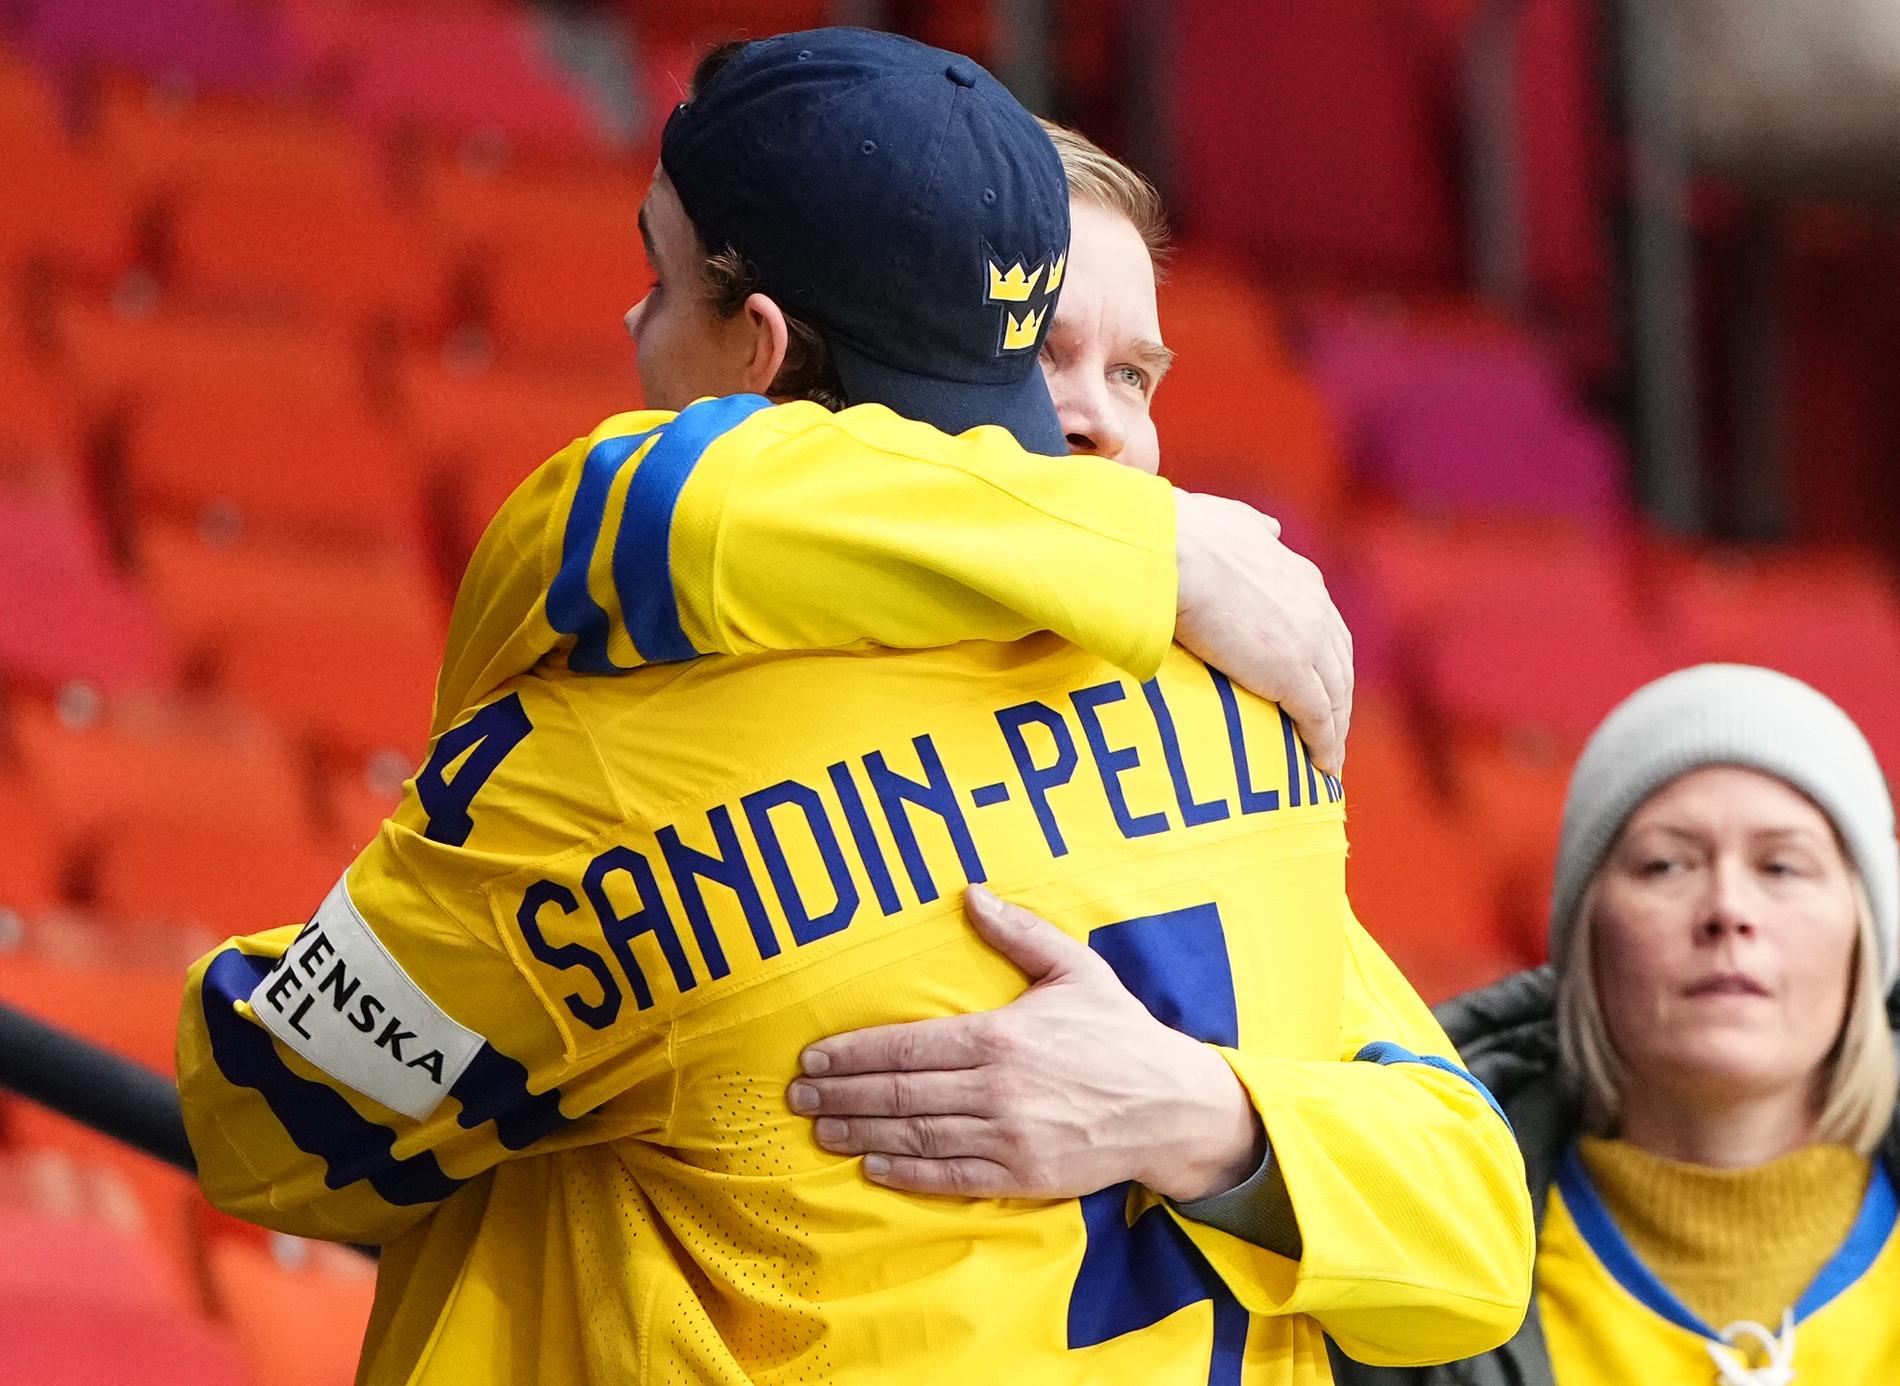 Axel Sandin Pellikka får en kram av pappa Janne.